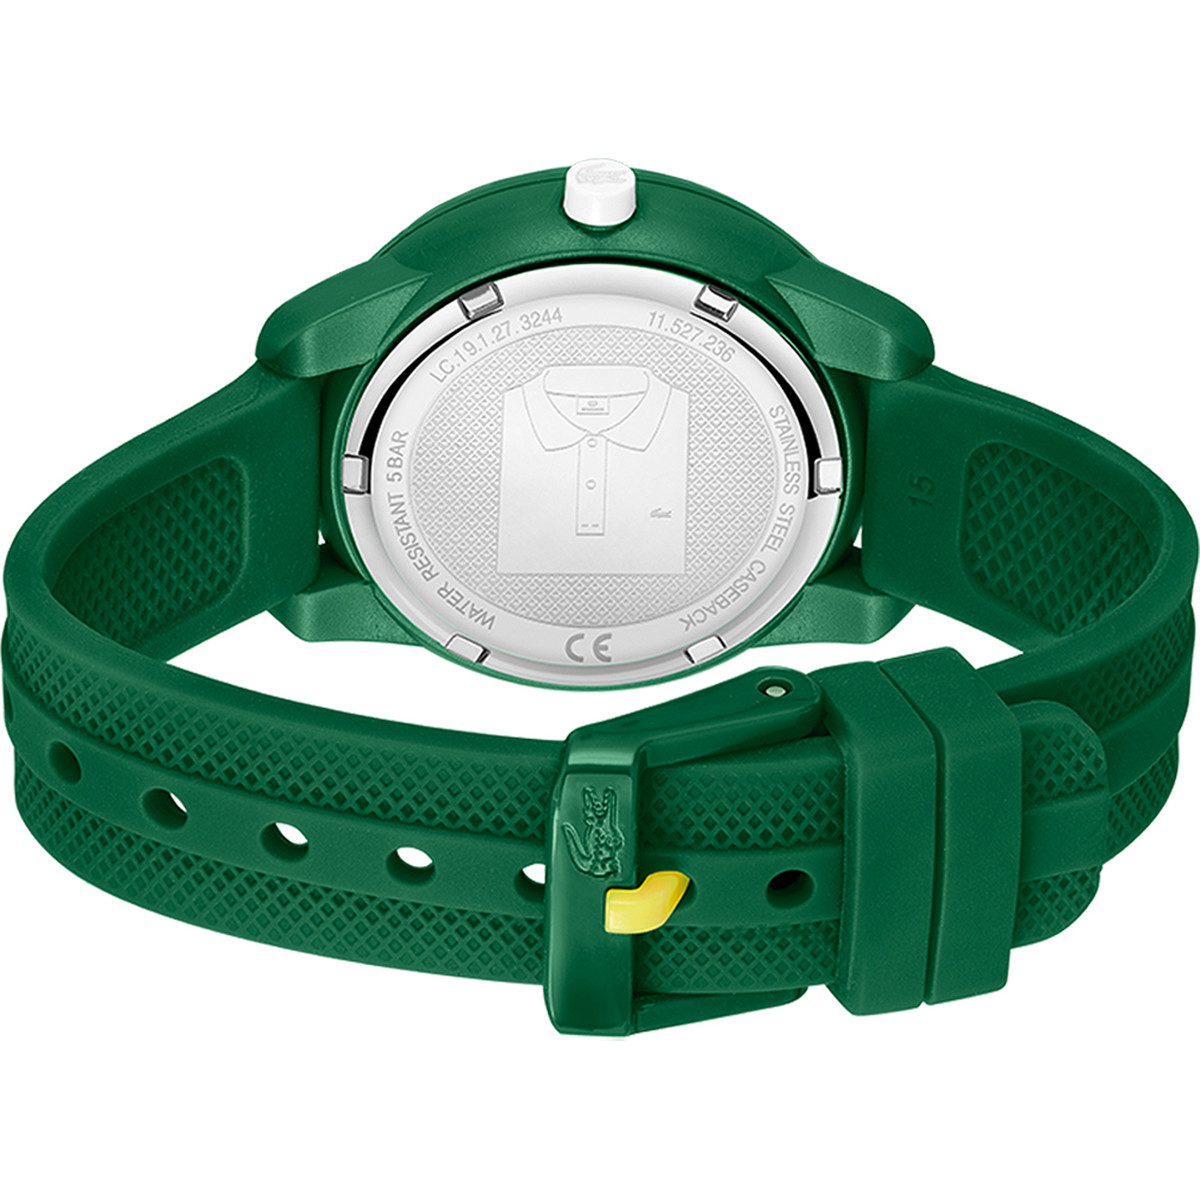 Montre LACOSTE mini tennis enfant bracelet silicone vert - vue 3